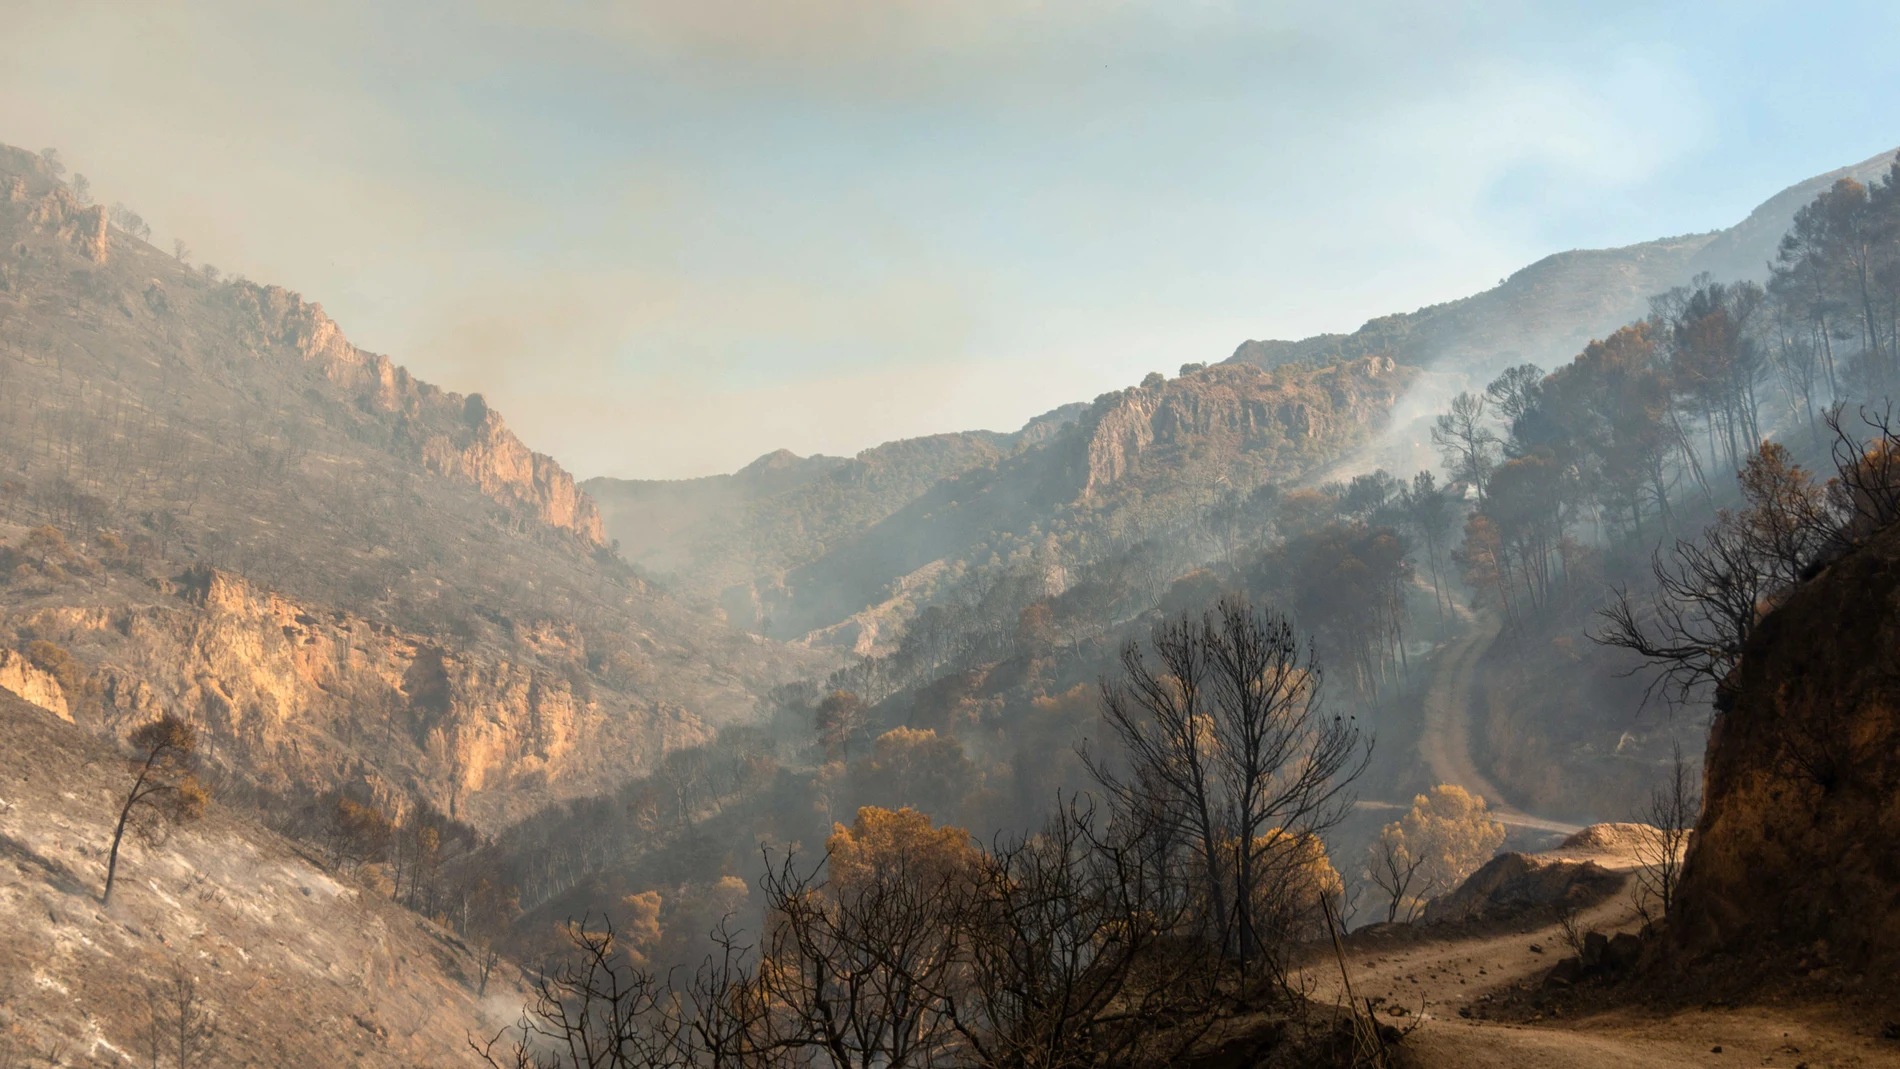 Medios aéreos y terrestres del Infoca trabajan en la extinción de un incendio forestal declarado este jueves en un paraje de Los Guájares, en la Costa Tropical de Granada. EFE/Alba Feixas